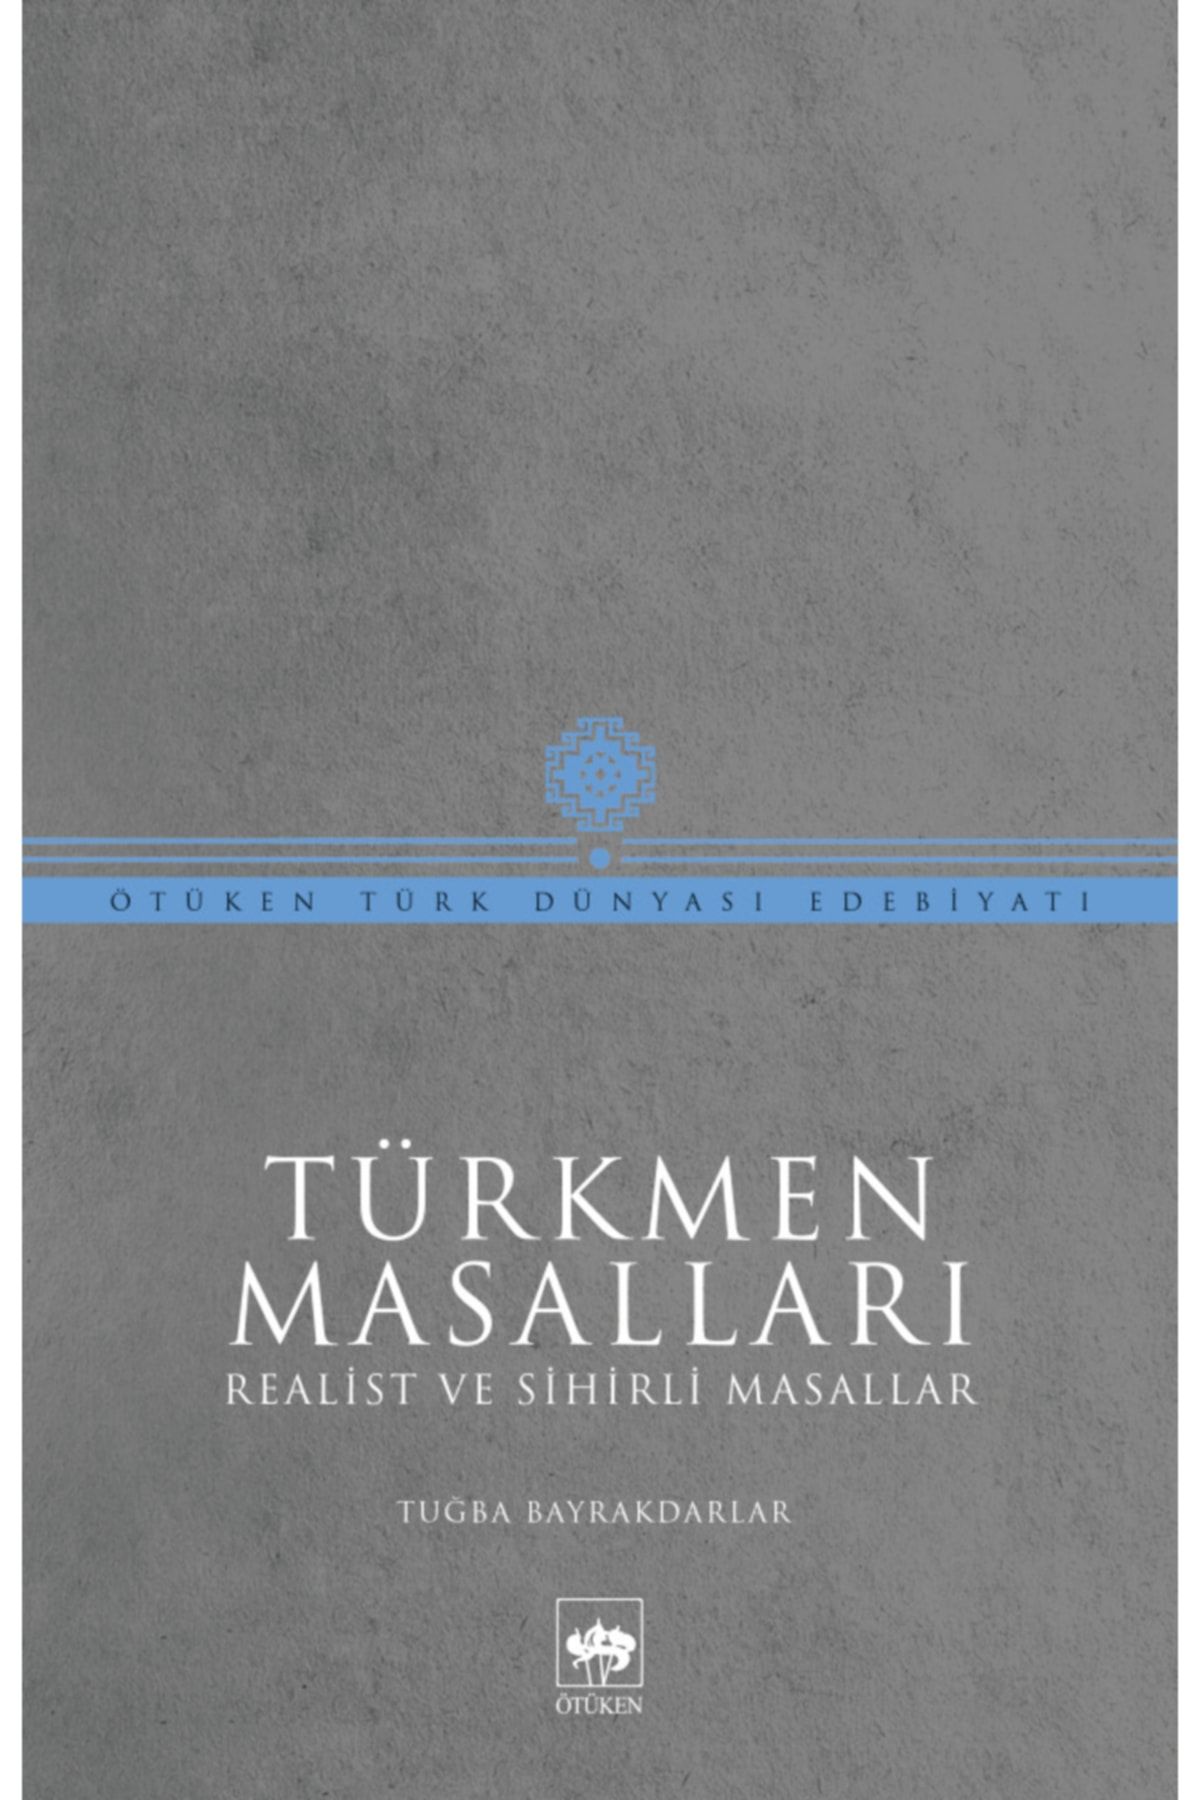 Ötüken Neşriyat Türkmen Masalları / Tuğba Bayrakdarlar